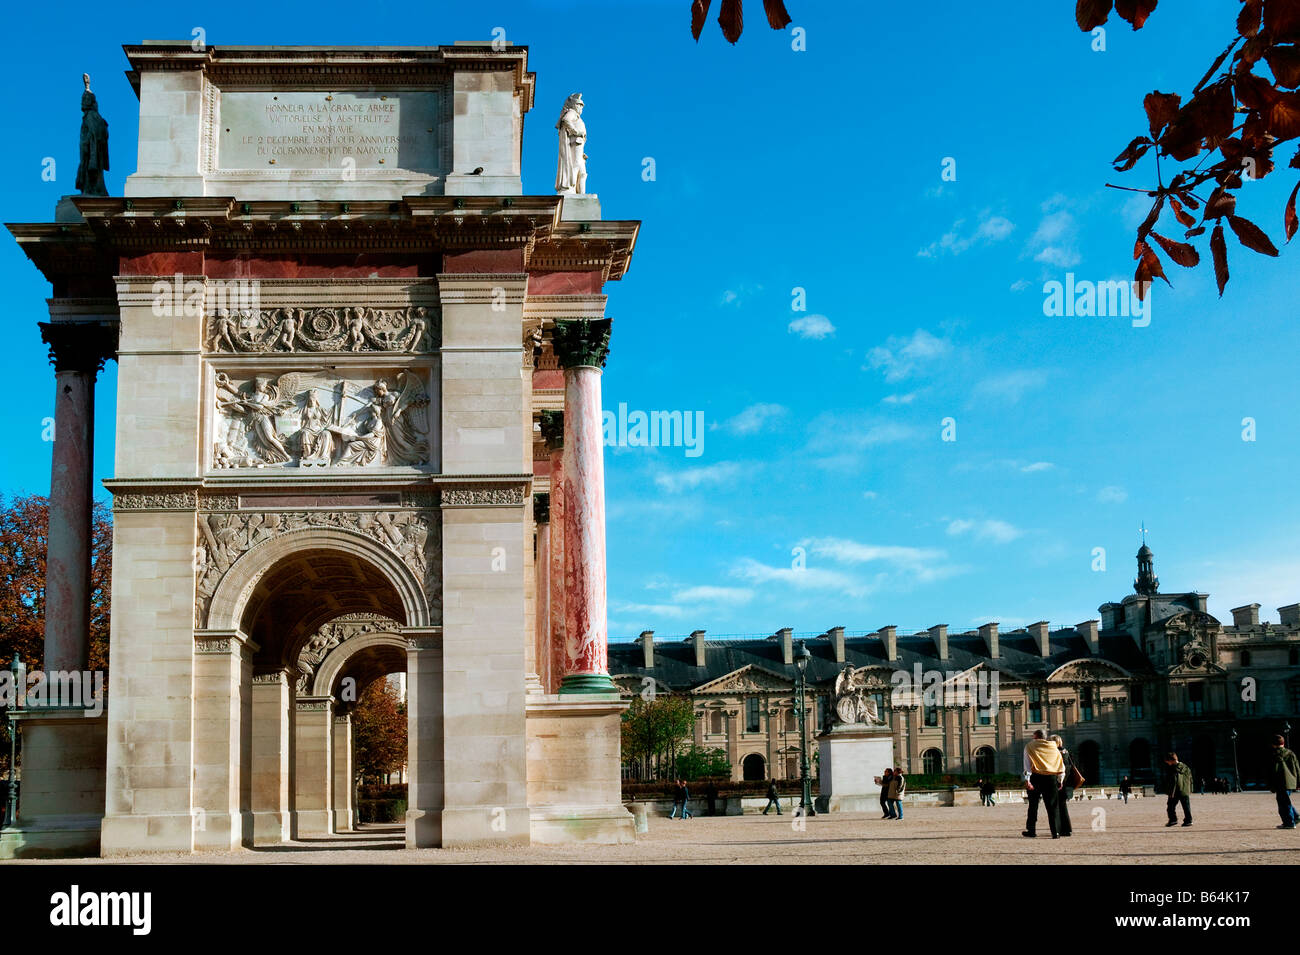 TRIUMPH ARCH OF CARROUSEL LOUVRE PARIS FRANCE Stock Photo